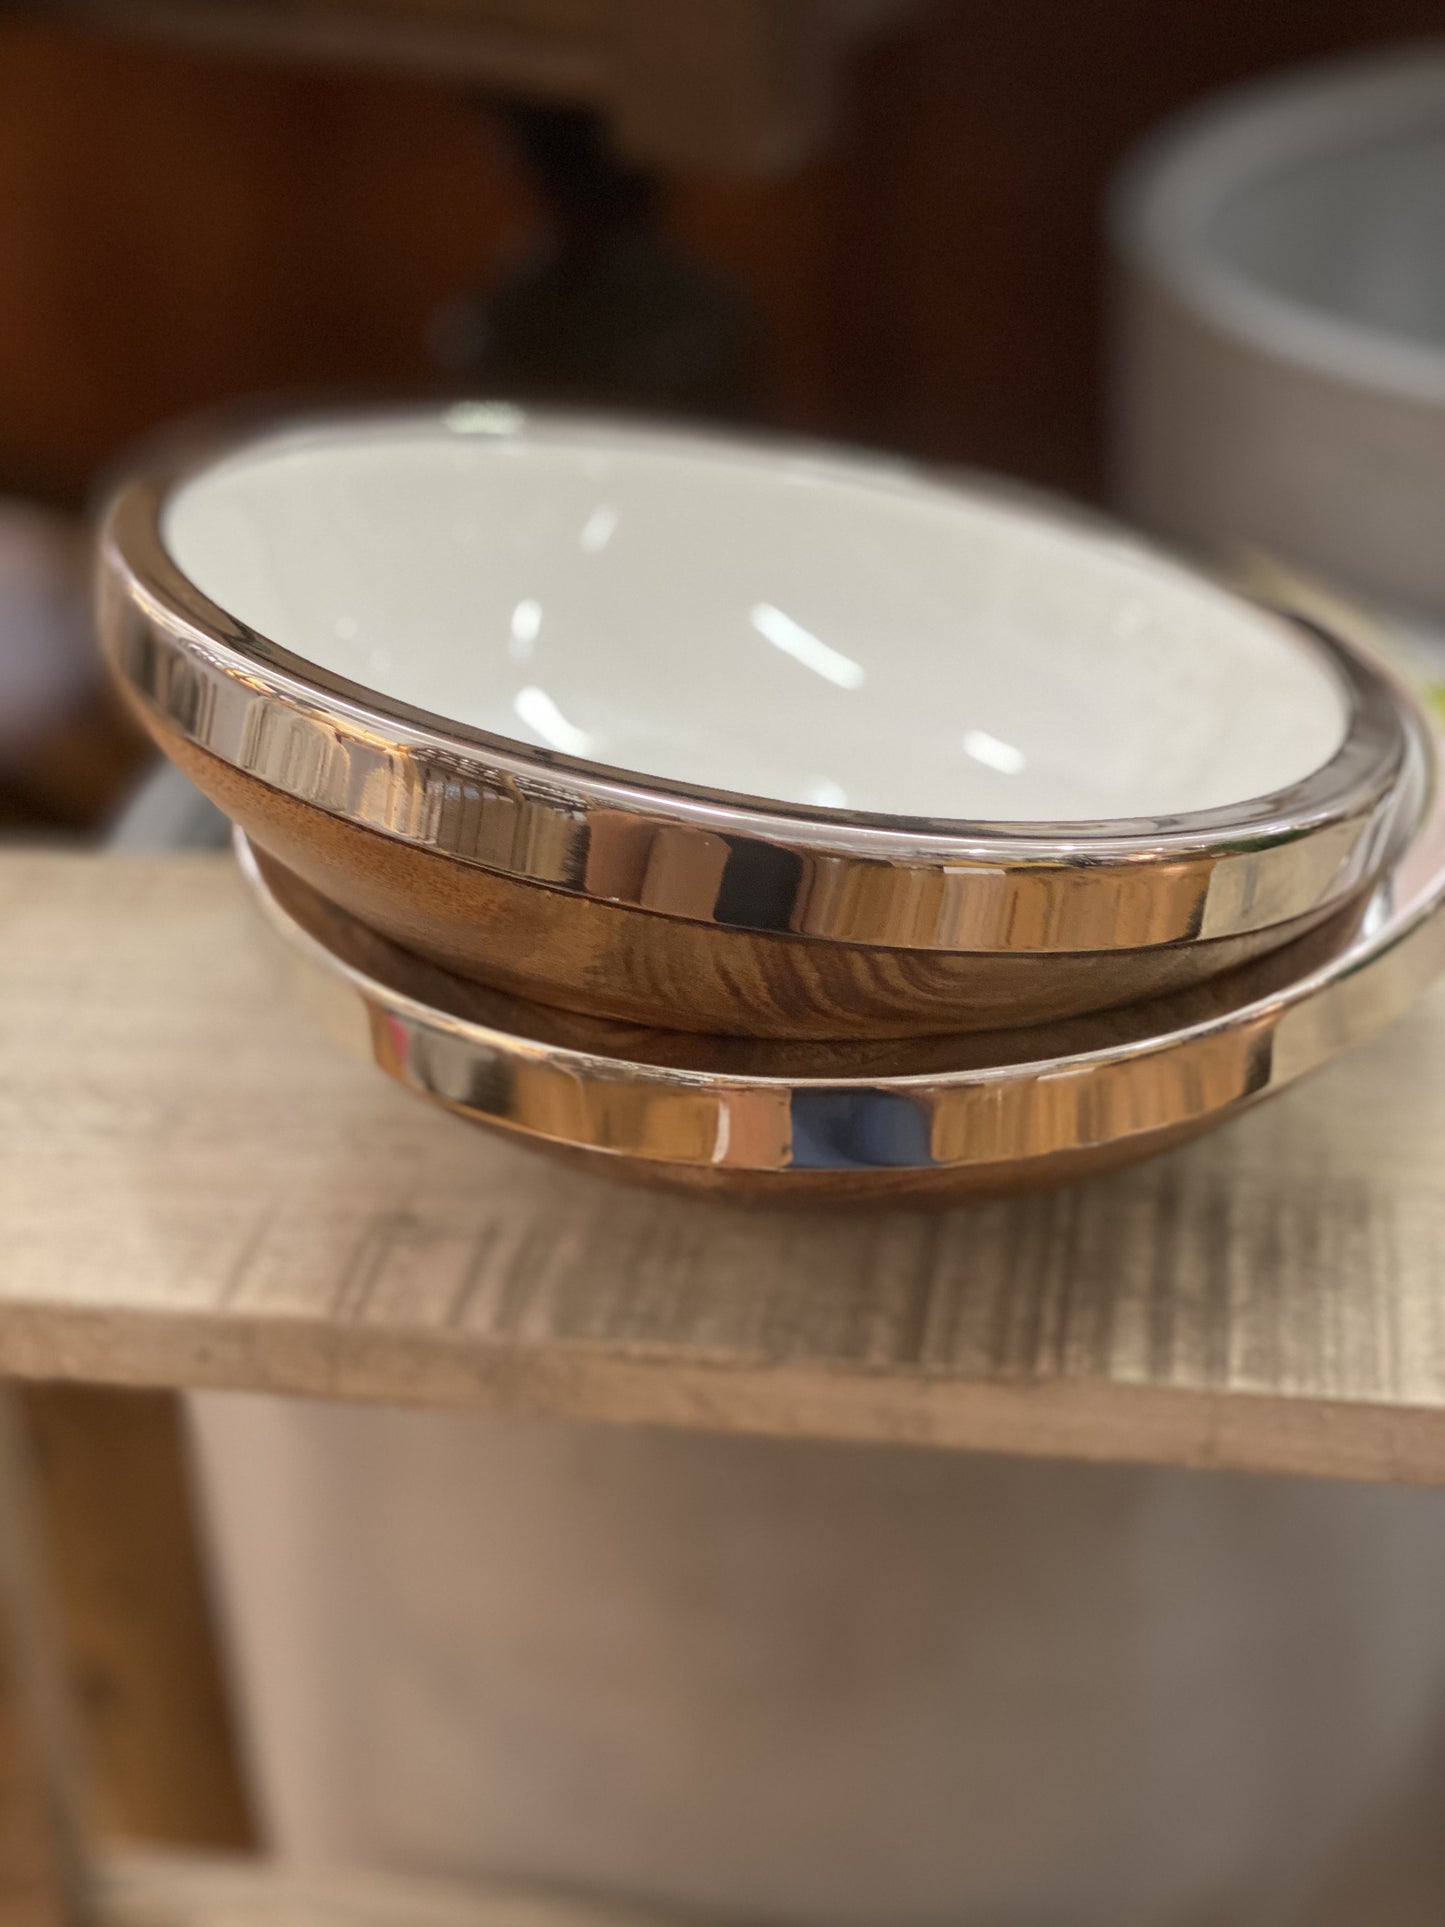 Enamel/wood bowl nickel edge small